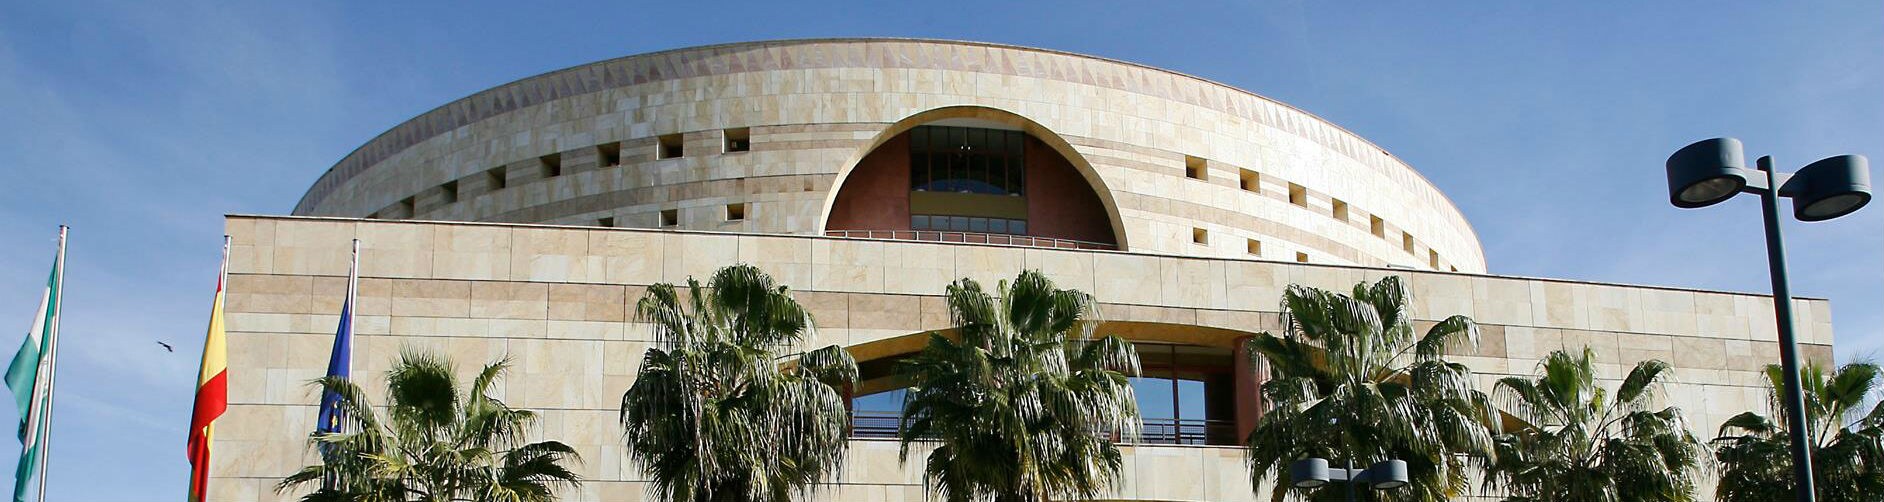 Sede de la Consejería de Hacienda y de Administración Pública de la Junta de Andalucía